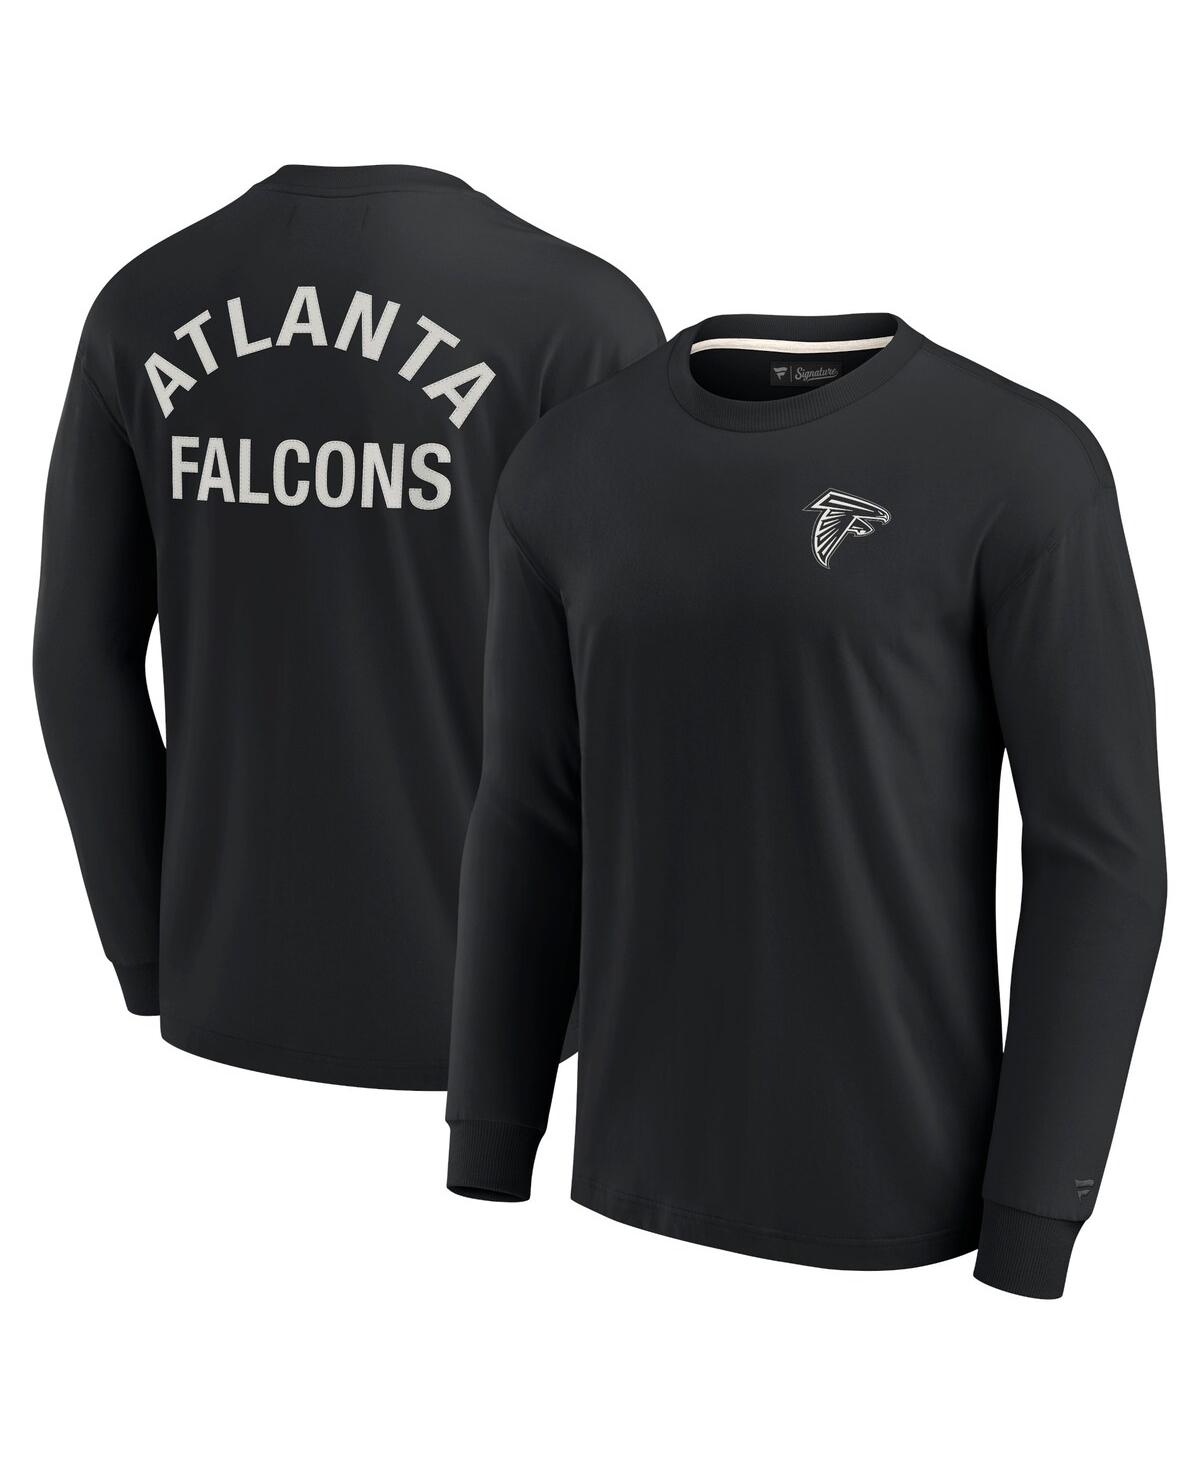 Shop Fanatics Signature Men's And Women's  Black Atlanta Falcons Super Soft Long Sleeve T-shirt